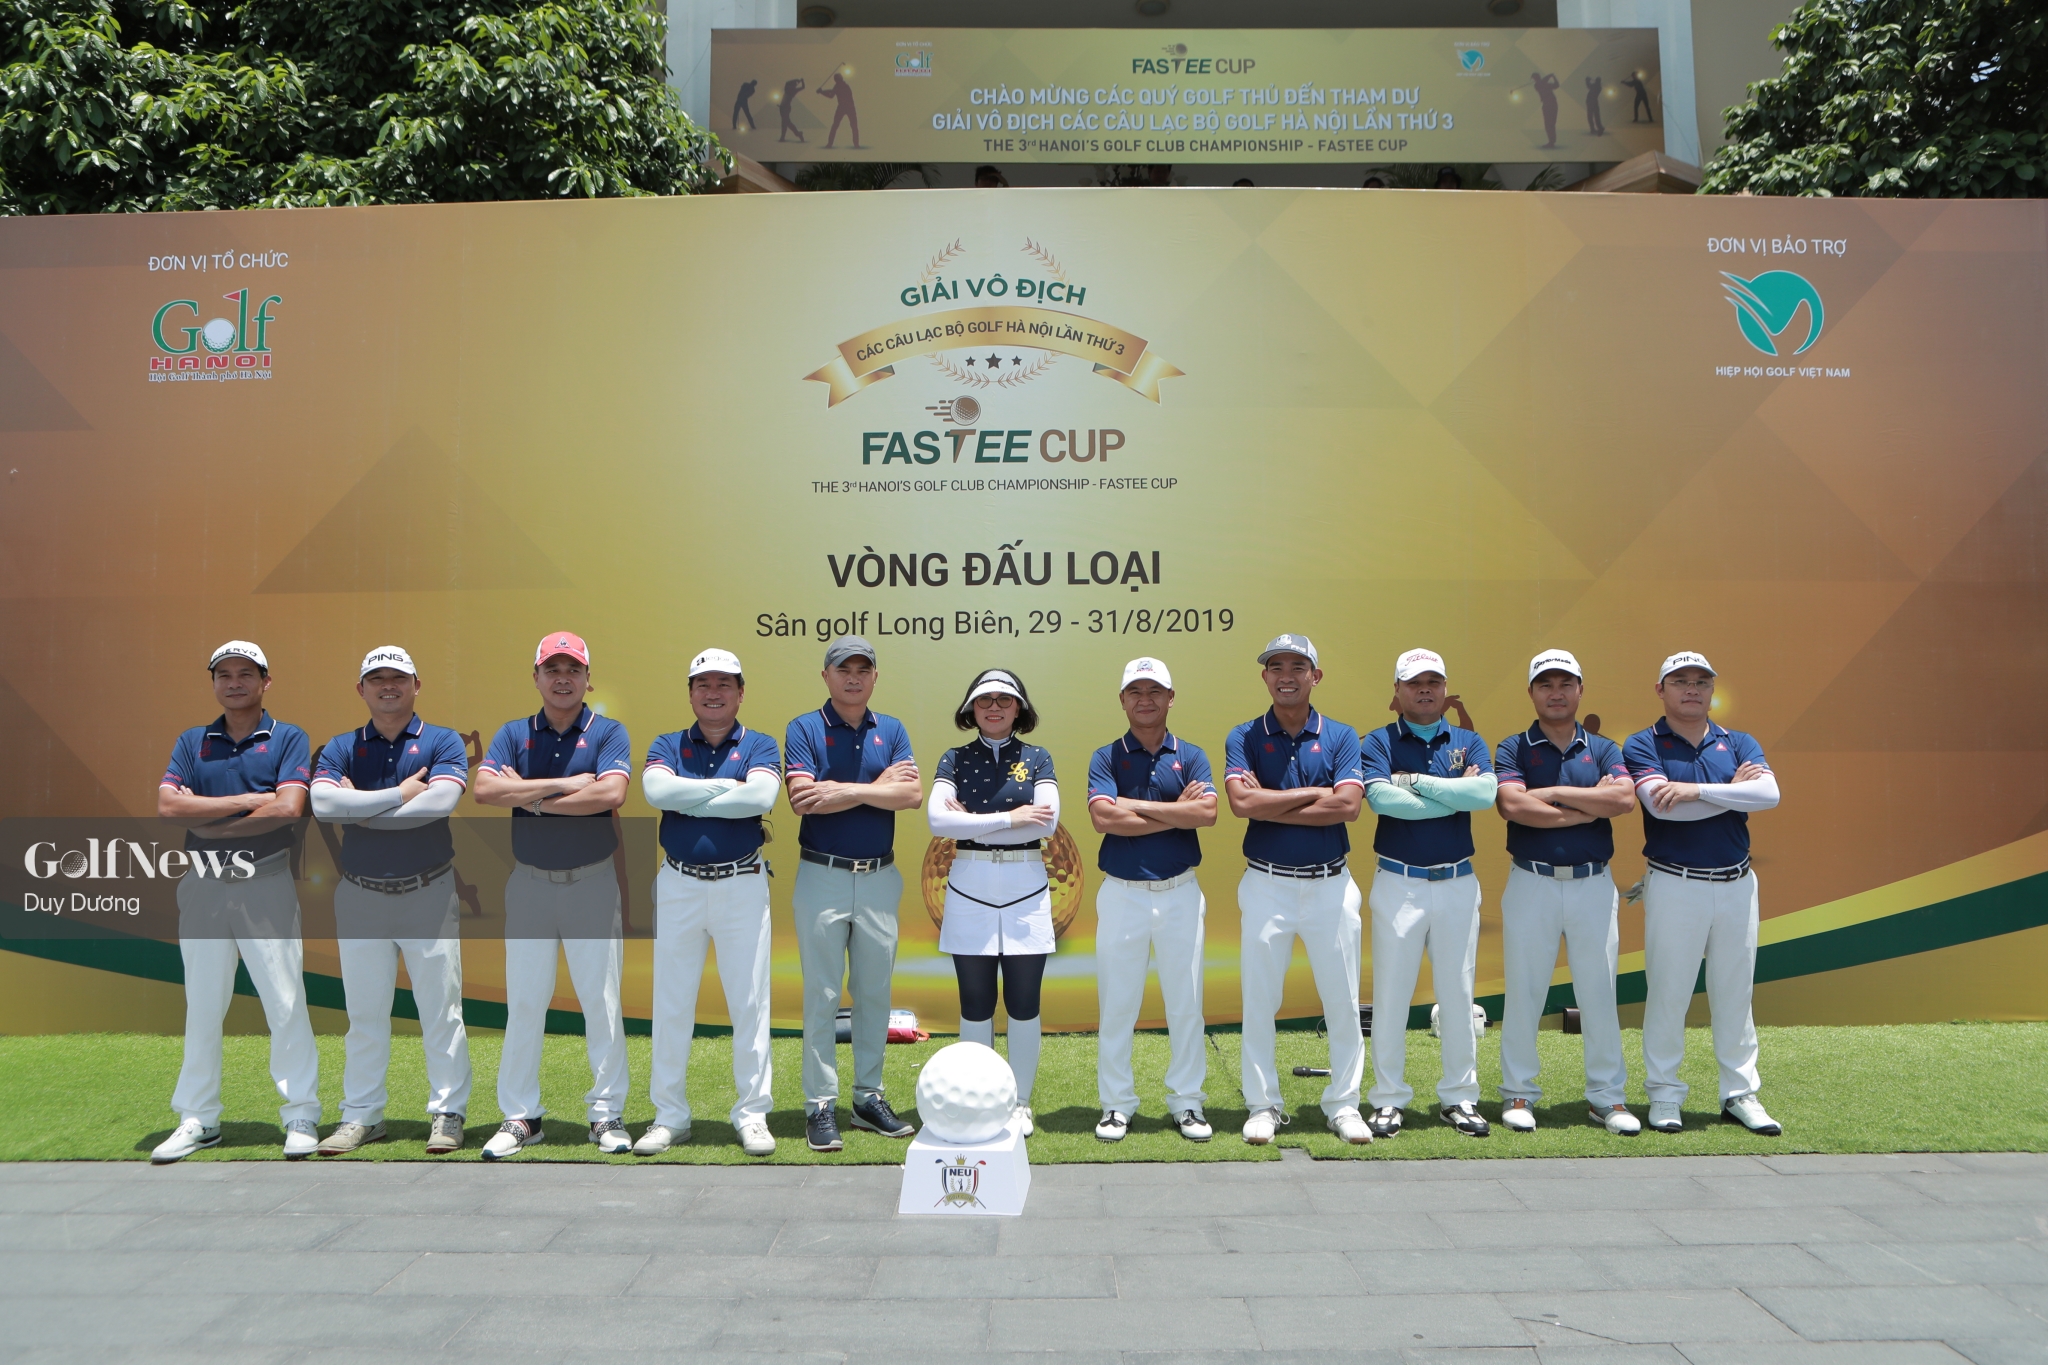 Vòng loại giải Vô địch các CLB golf Hà Nội lần thứ 3 - Fastee Cup: NEU Golf xuất sắc nhất ngày thi đấu thứ 2